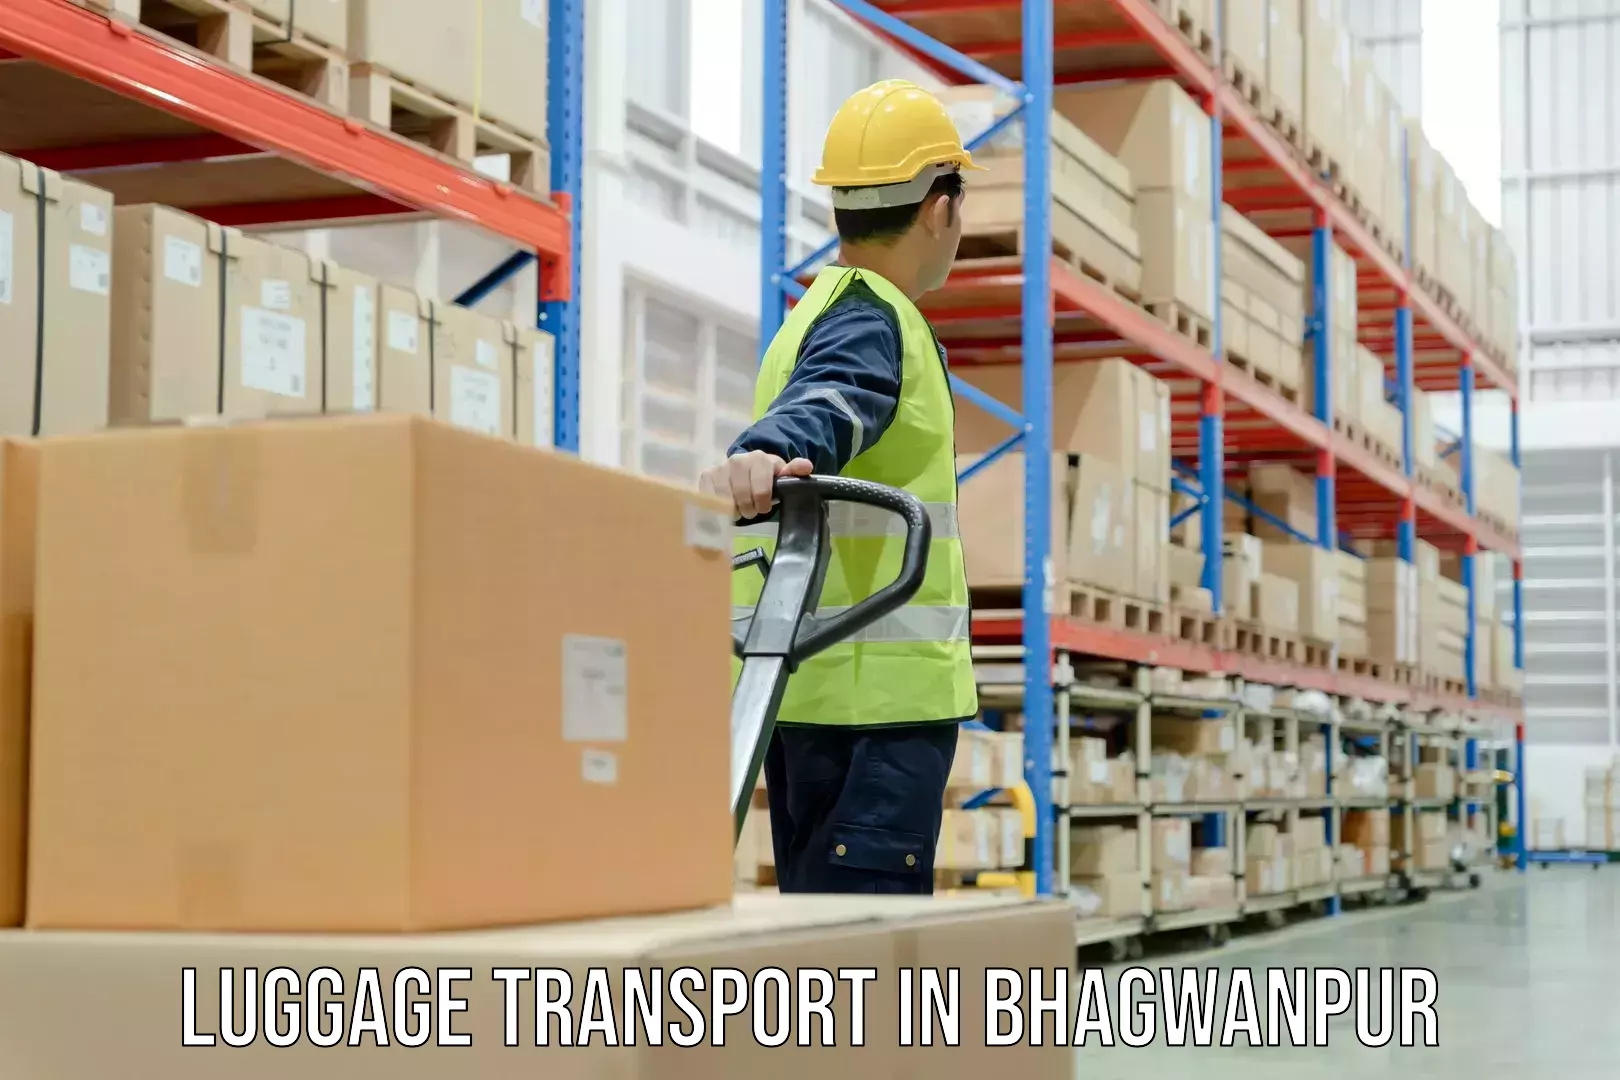 Luggage transfer service in Bhagwanpur